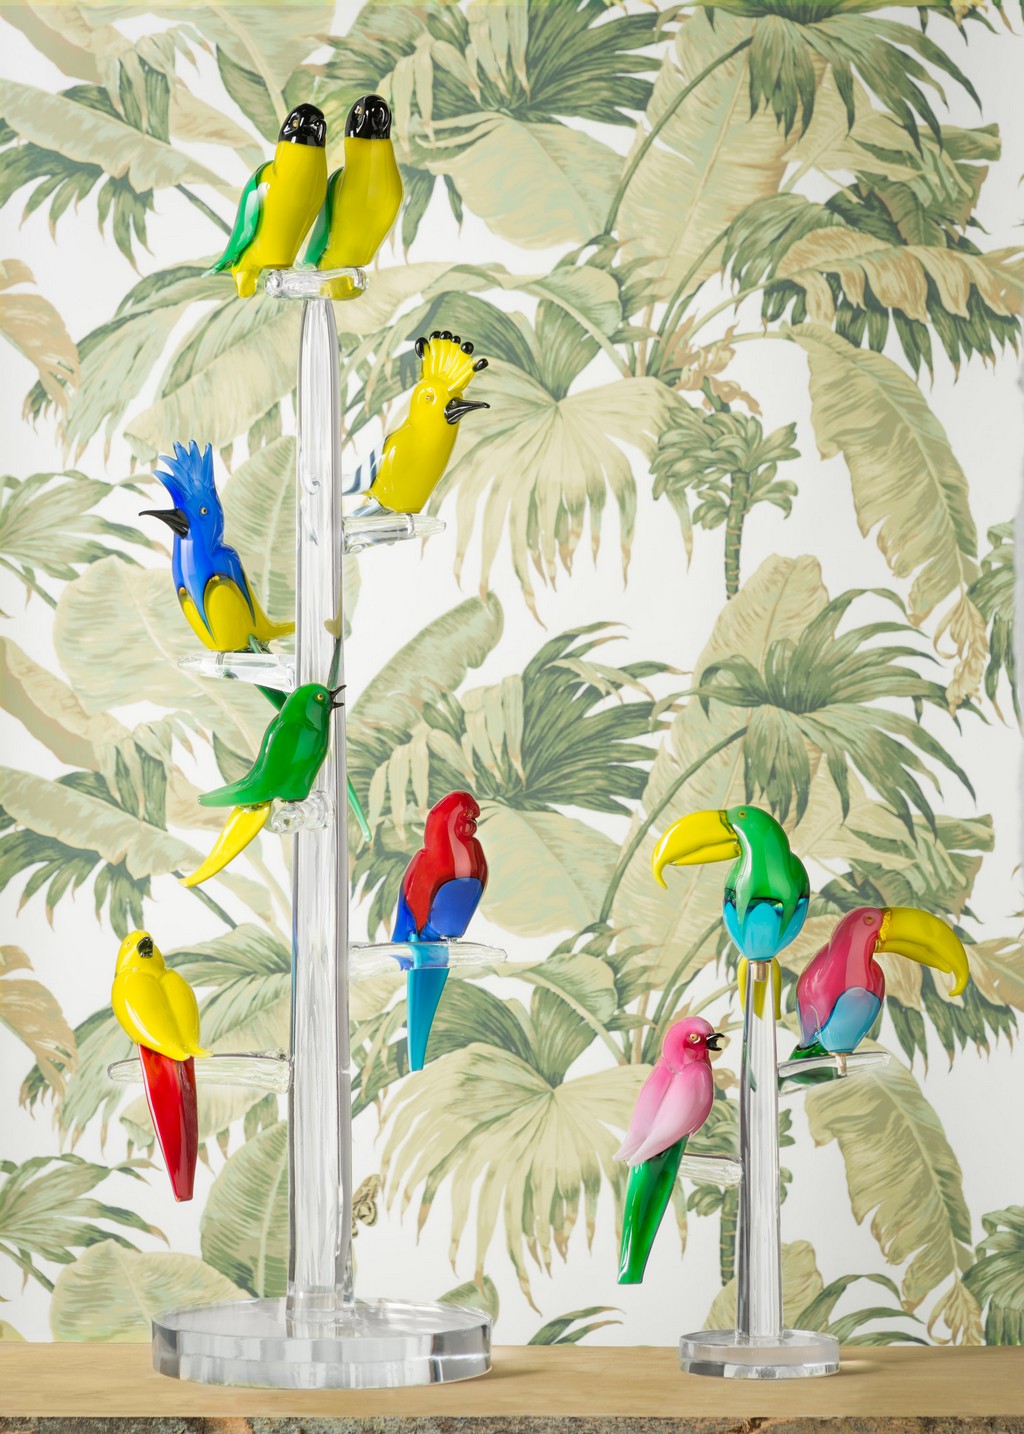 Larusmiani negozio: in mostra gli “Uccellini” della collezione Matteo Thun Atelier, le foto